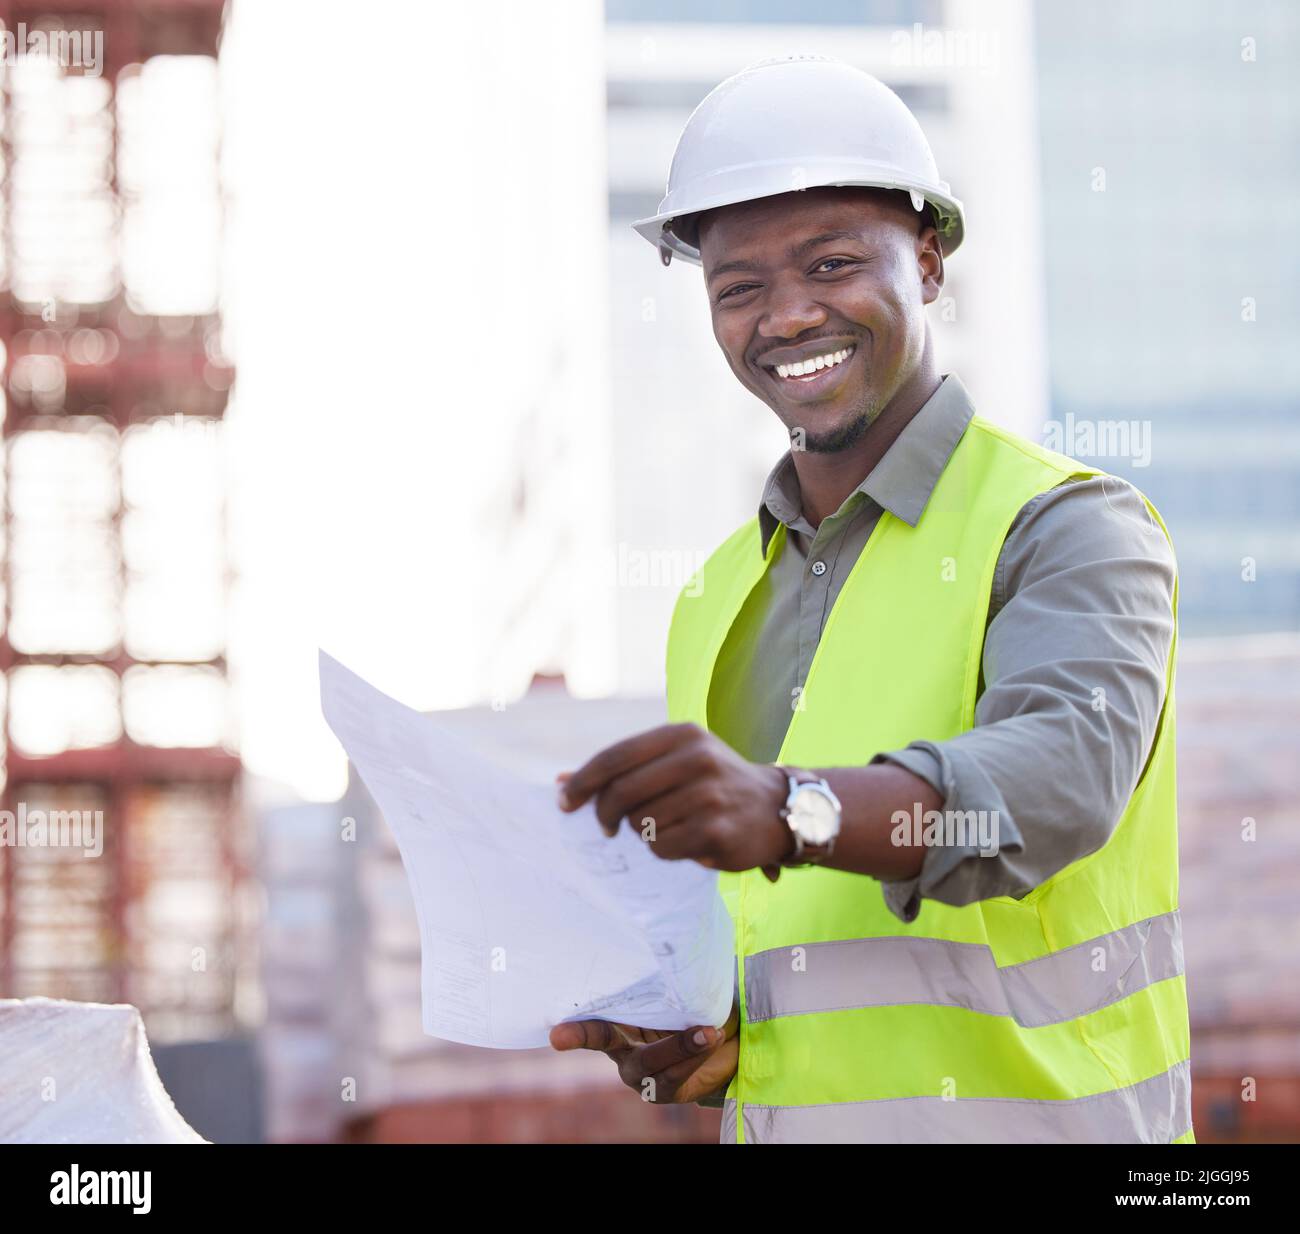 Dies sind Anweisungen für den Erfolg. Zugeschnittenes Porträt eines hübschen jungen Bauarbeiters, der ein Dokument liest, während er auf einer Baustelle steht. Stockfoto